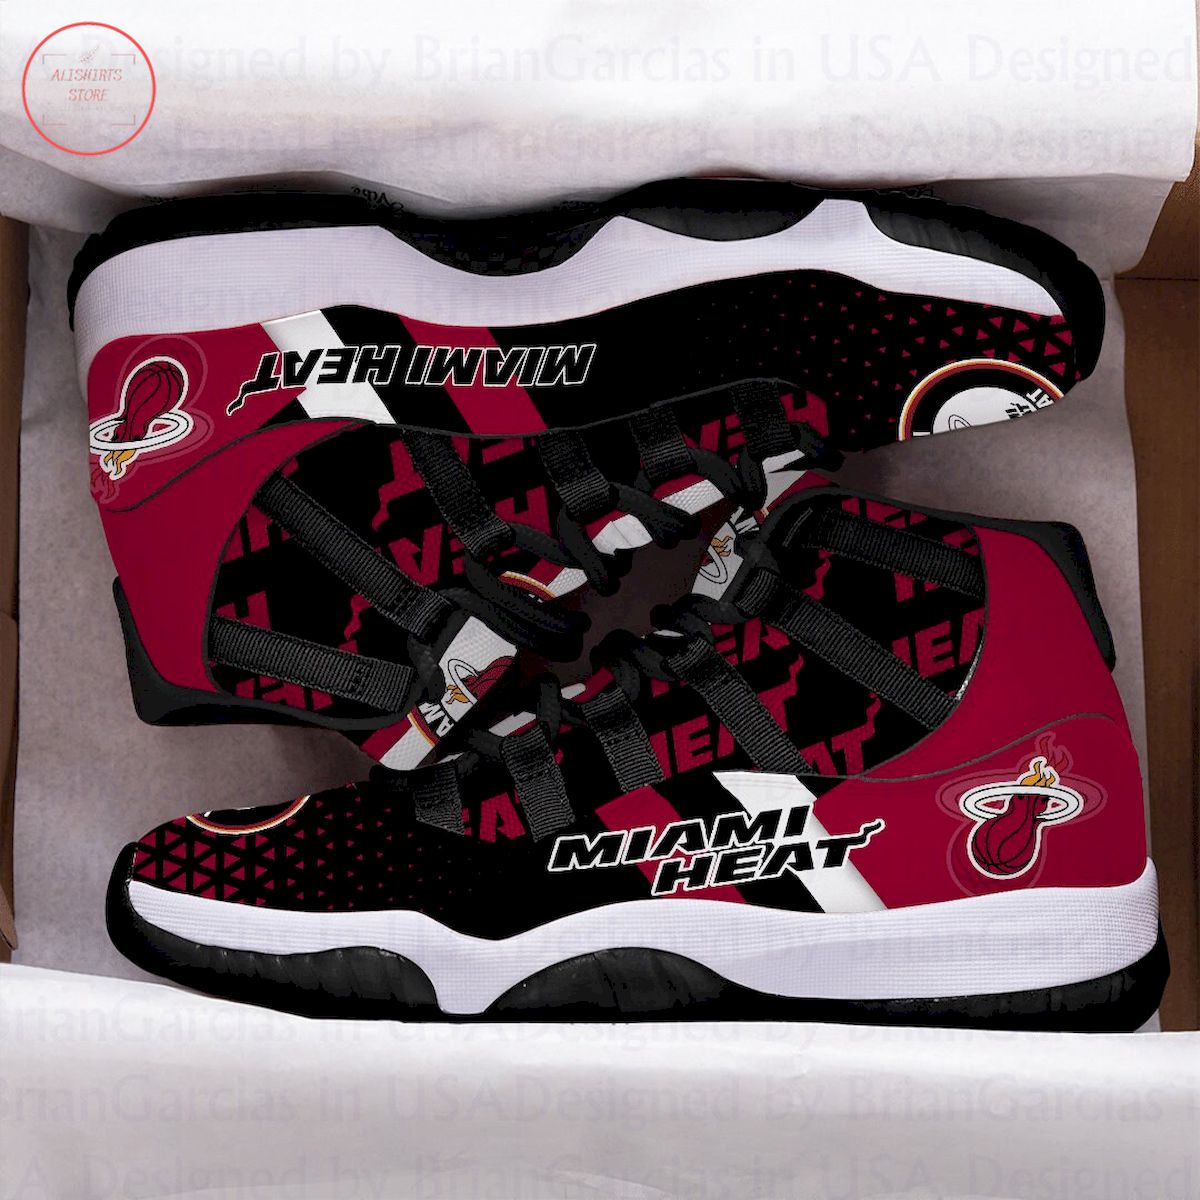 Miami Heat Air Jordan 11 Sneakers